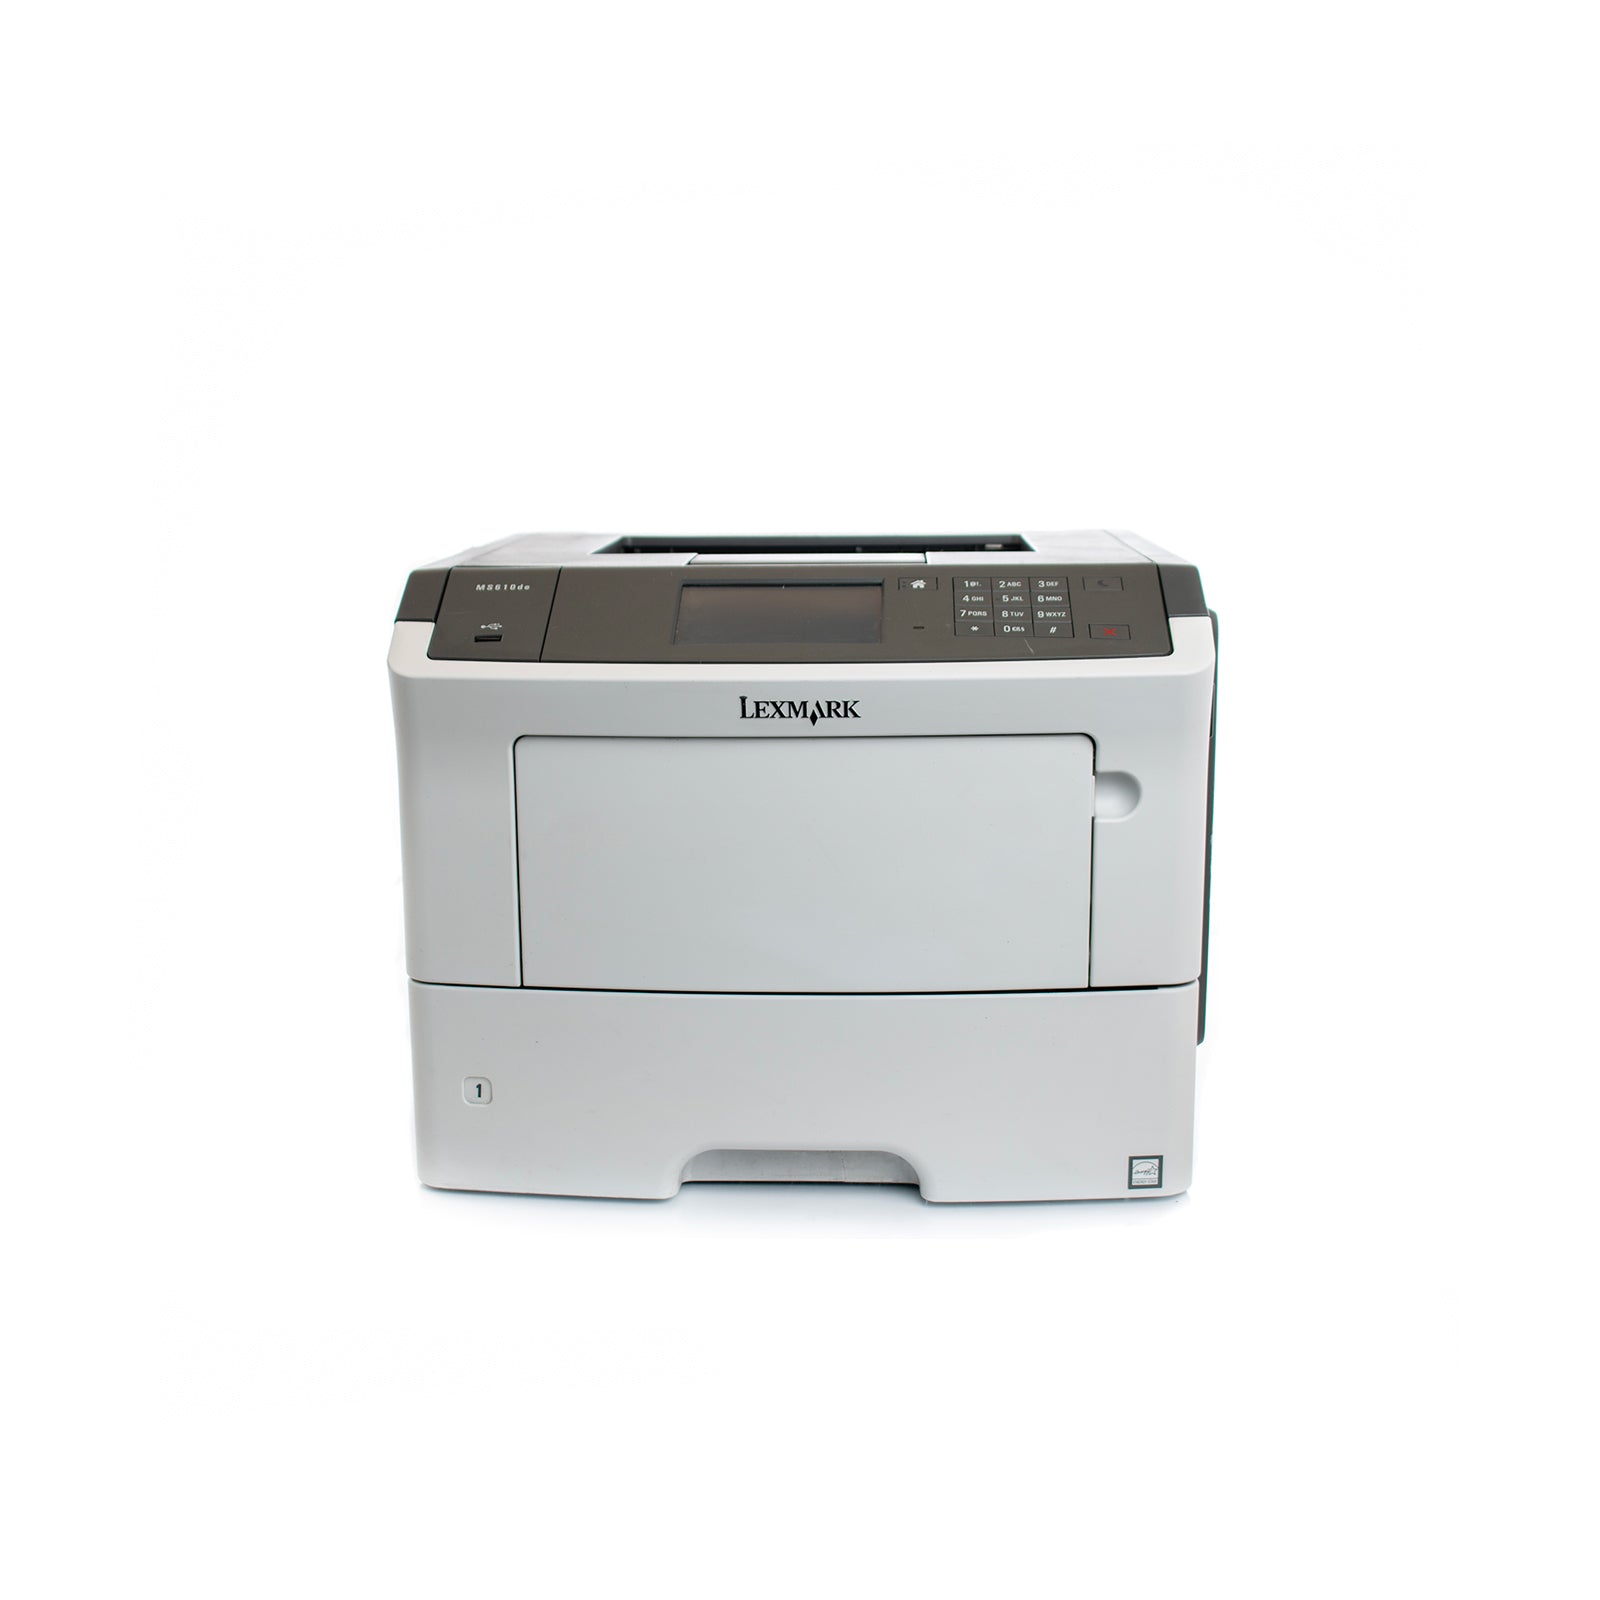 Lexmark MS610de Laser Printer 35S0500 Refurbished